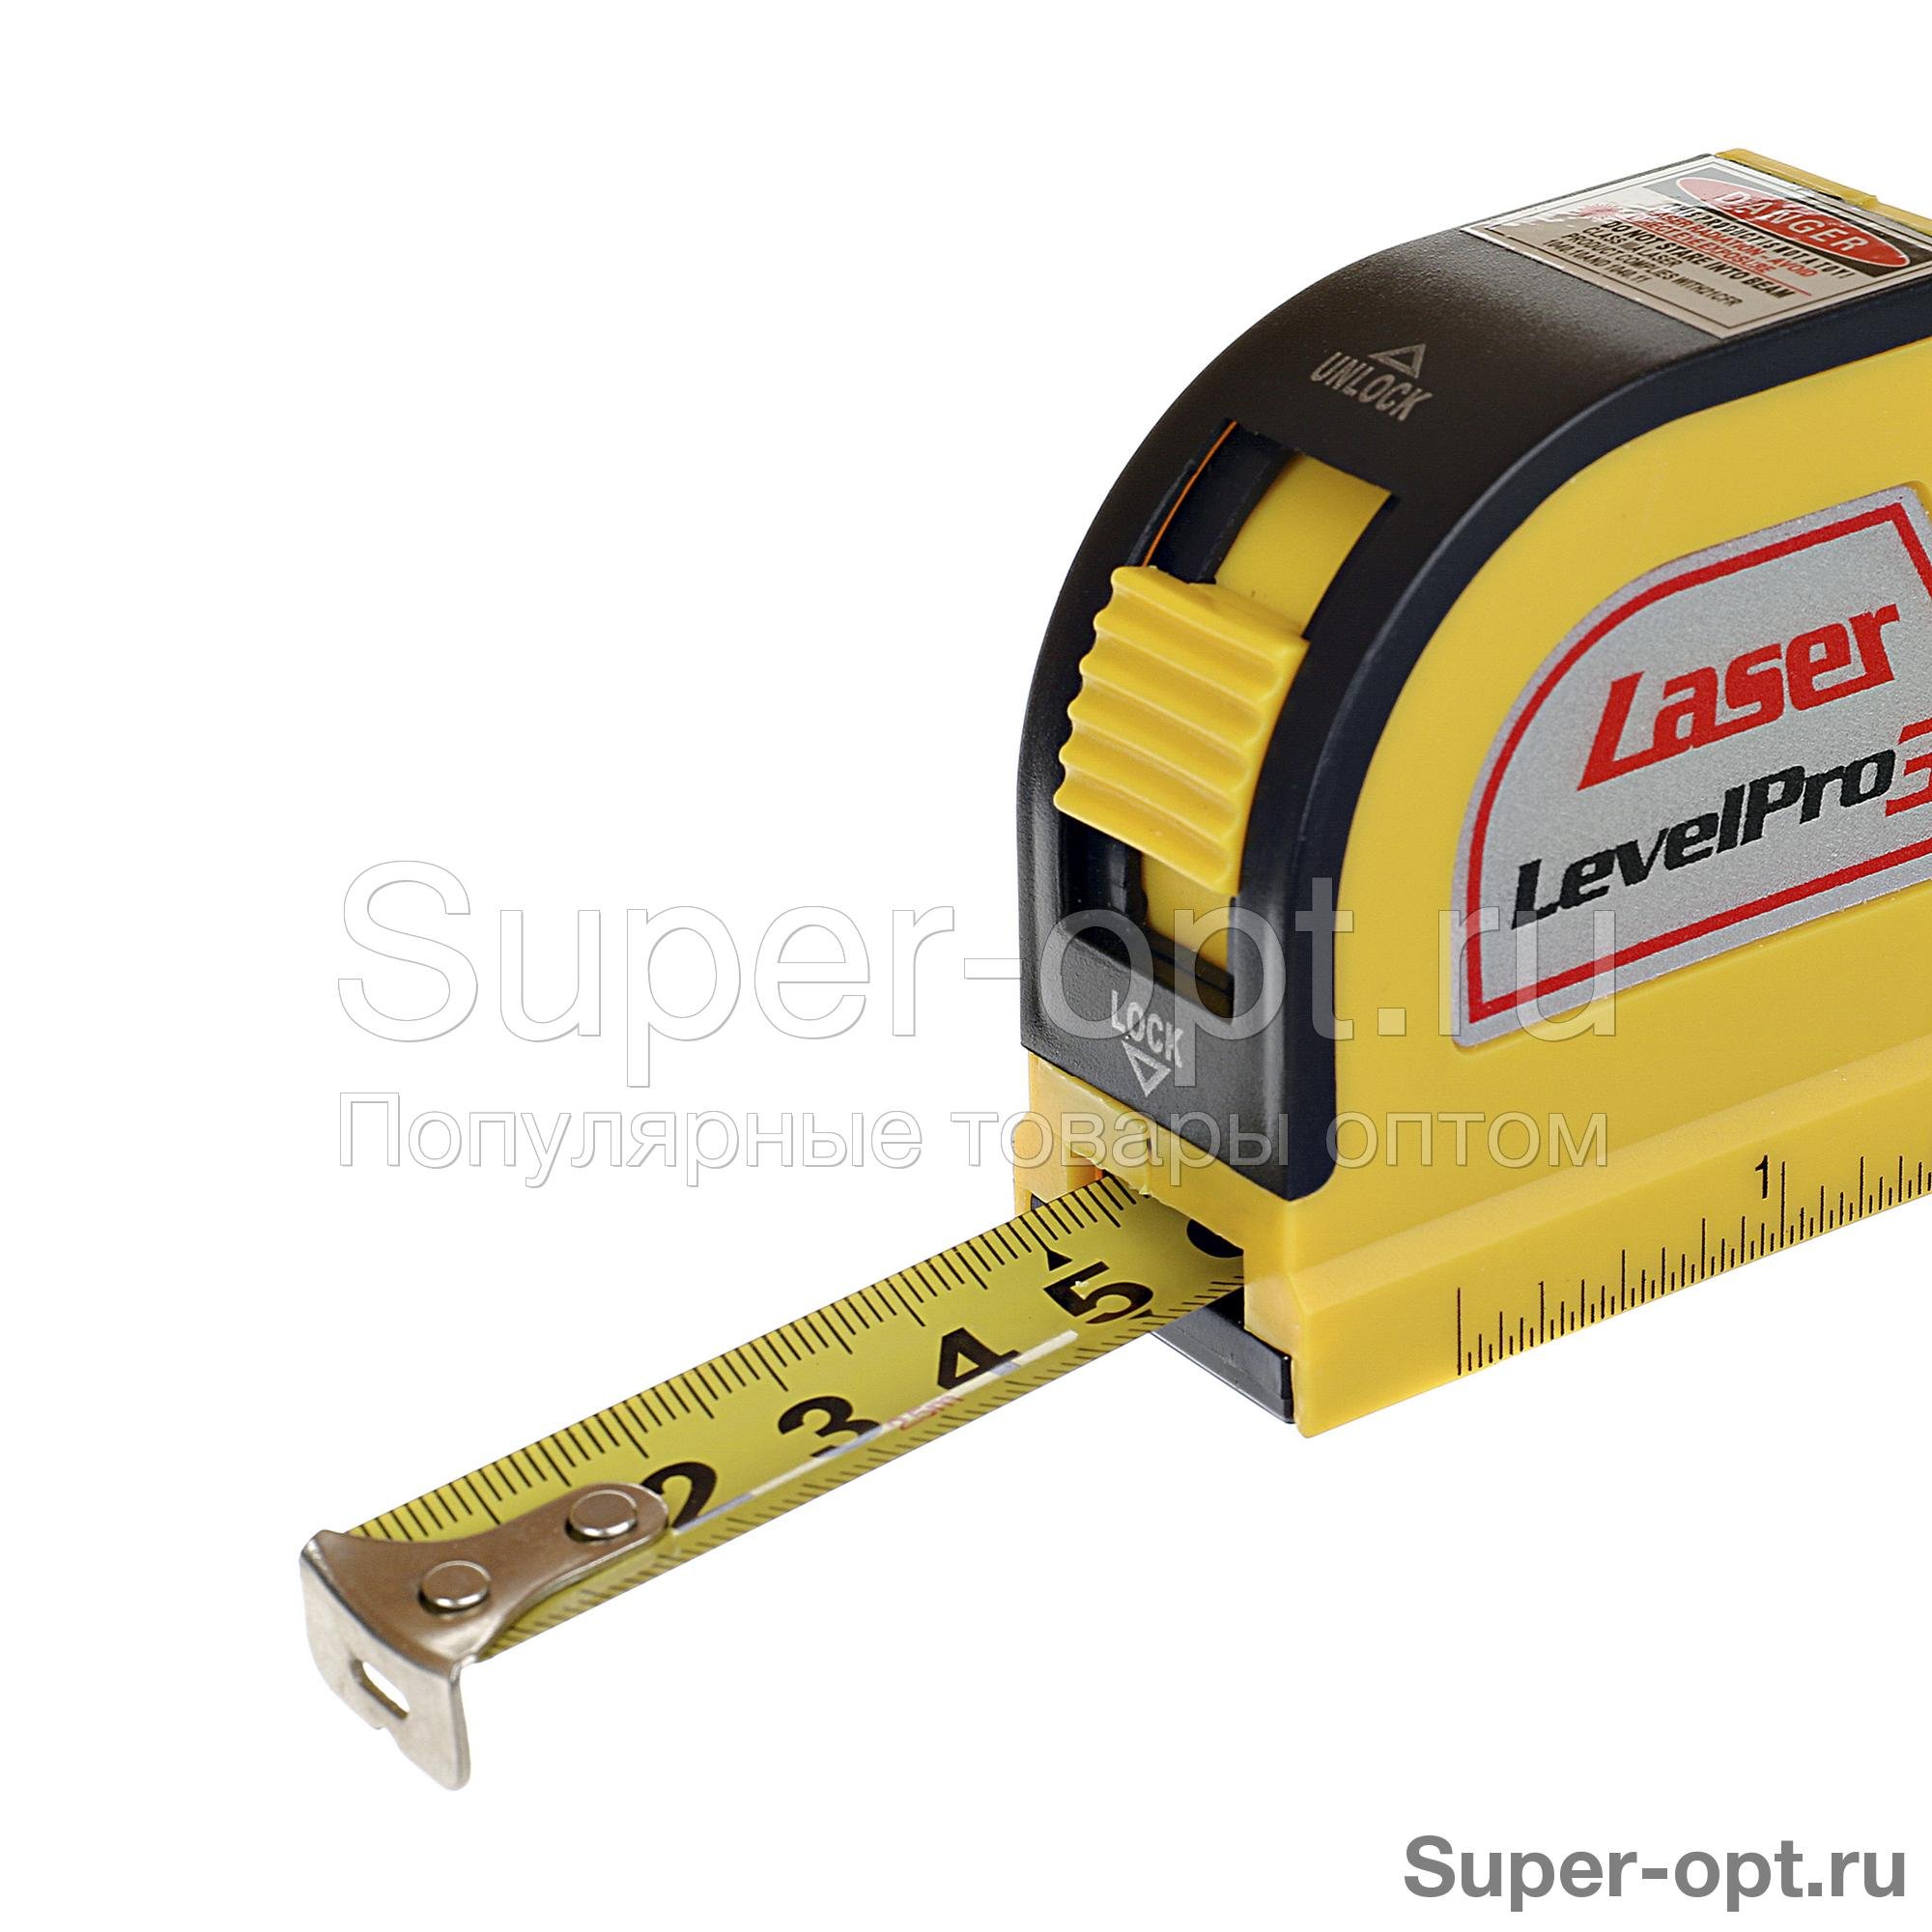 Лазерный уровень Laser Level Pro 3. Лазерный уровень easy Fix. Control easy Fix. Лазерный уровень контрол ИЗИ фикс цена. Уровень easy